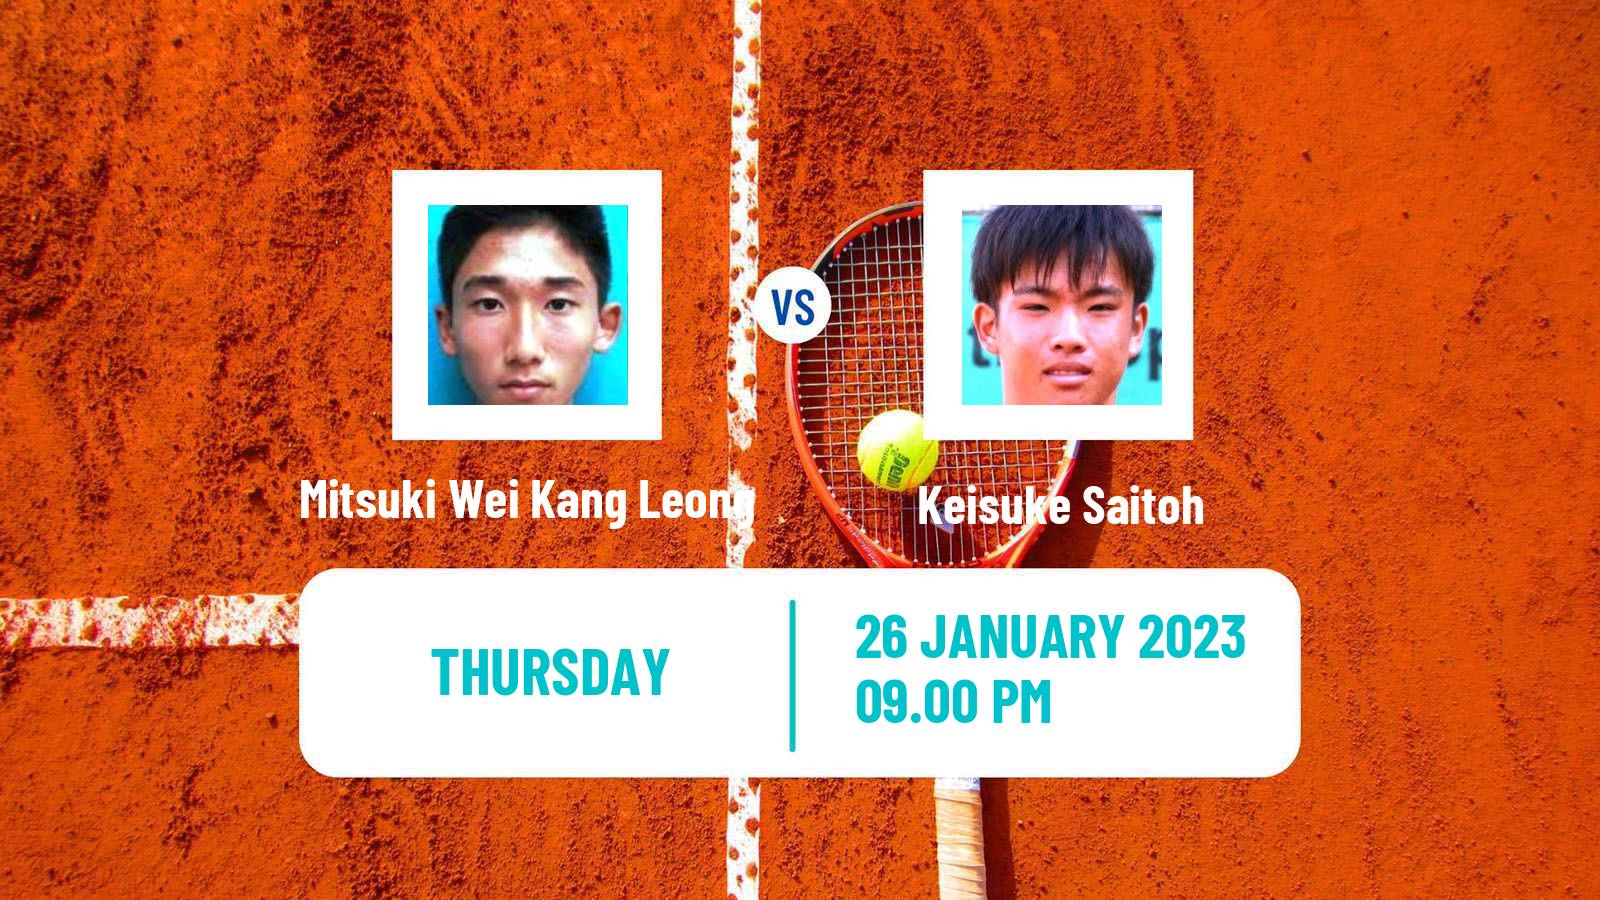 Tennis ITF Tournaments Mitsuki Wei Kang Leong - Keisuke Saitoh